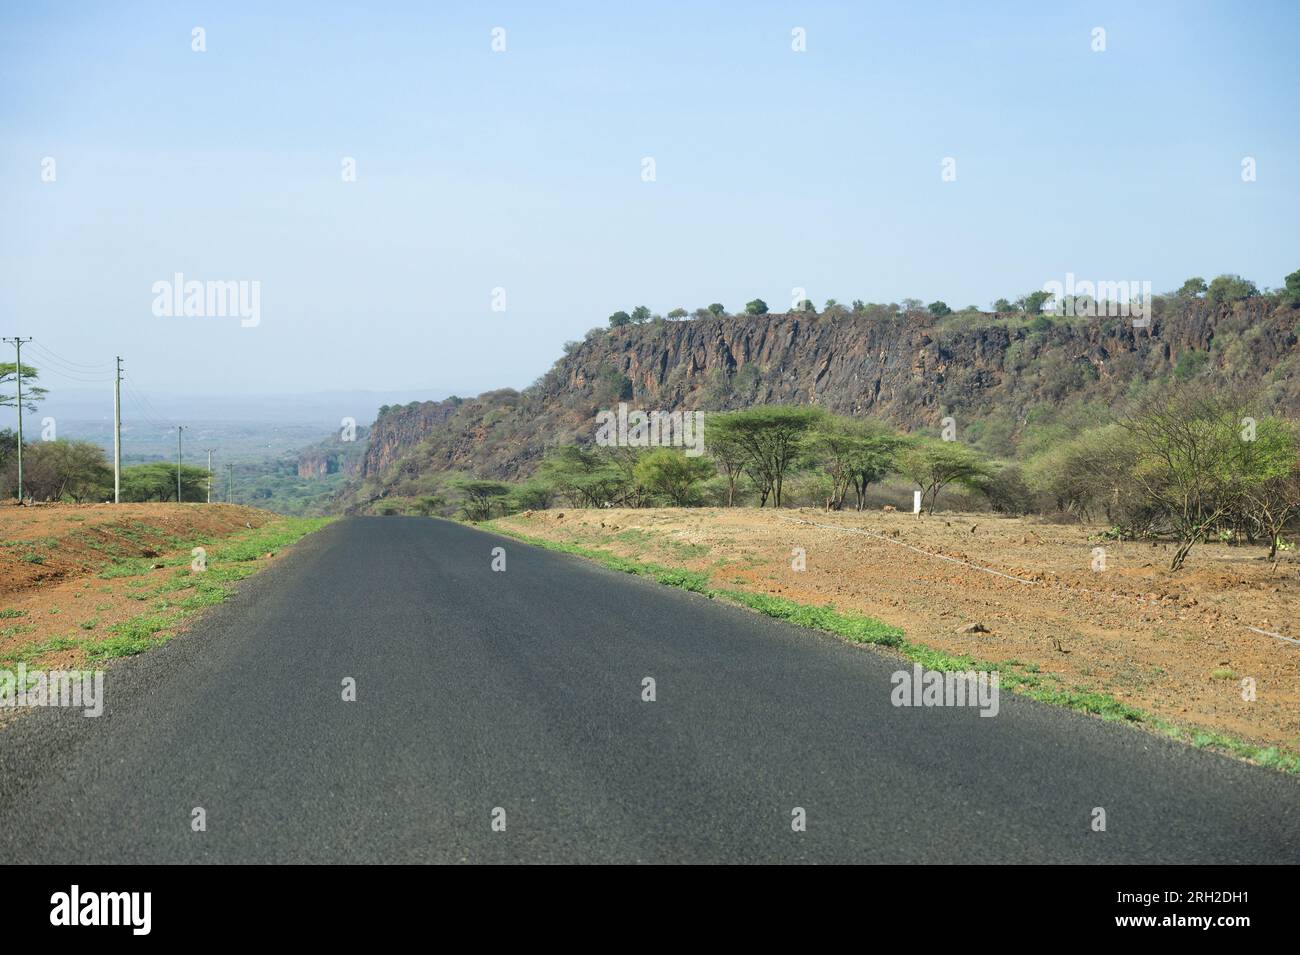 Vue de la route Nakuru-Sigor avec arbres et escarpement rocheux, Kenya Banque D'Images